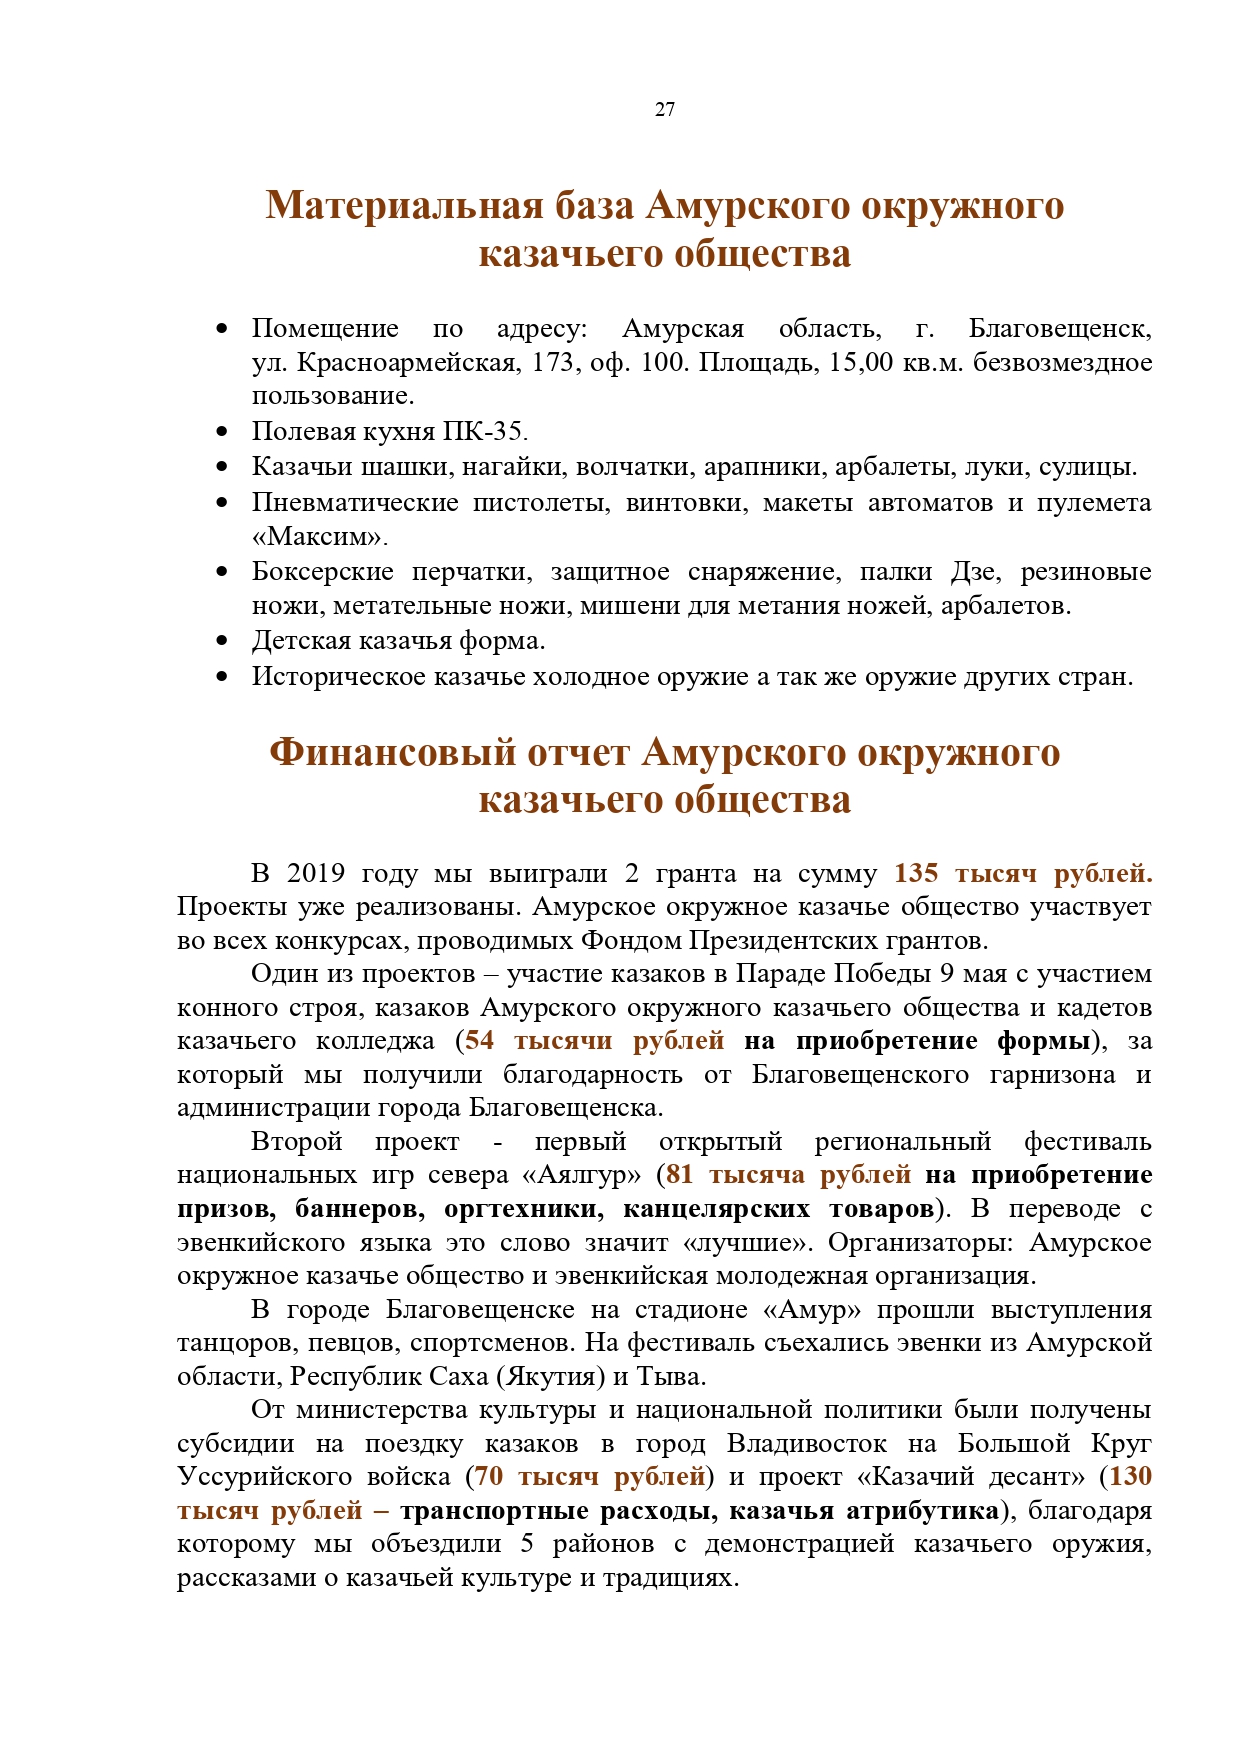 Публичный годовой отчет Амурского окружного казачьего общества за 2019 год Page 0027